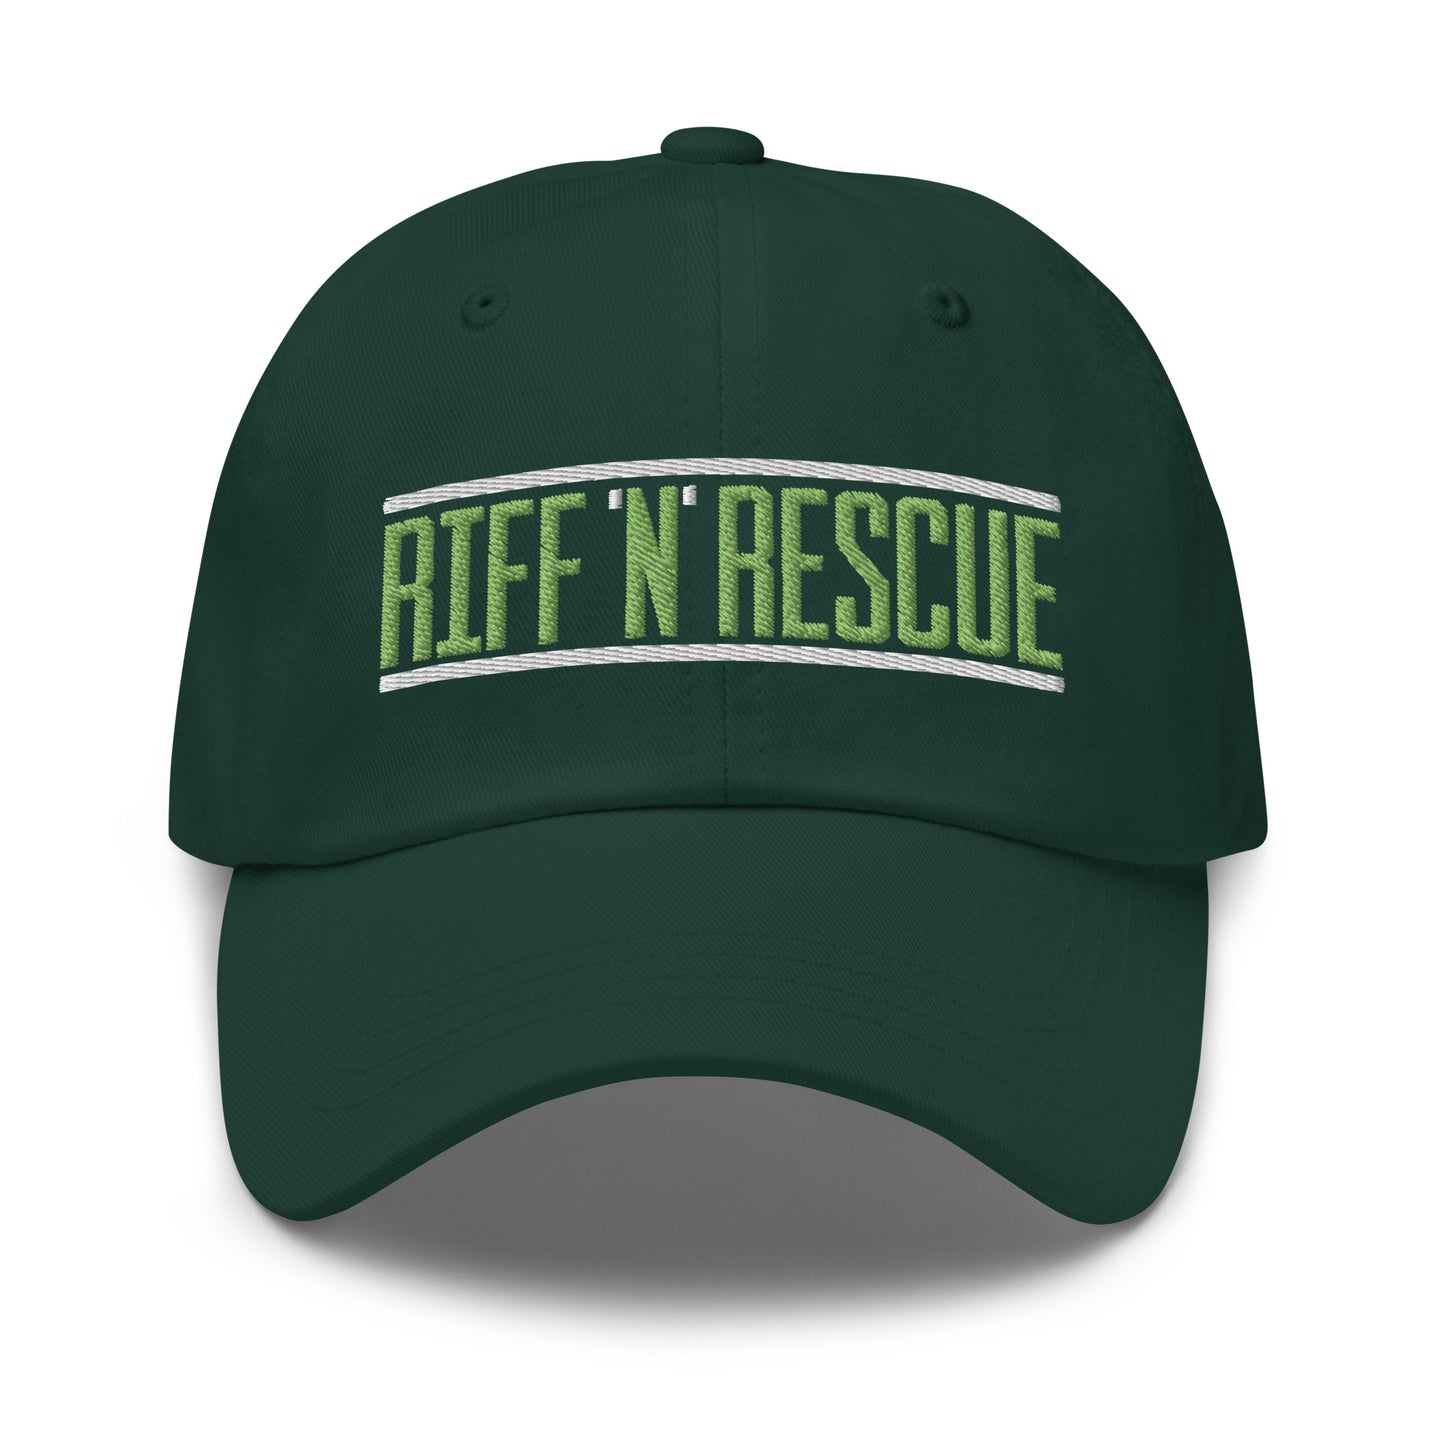 Riff N Rescue Dad Hat